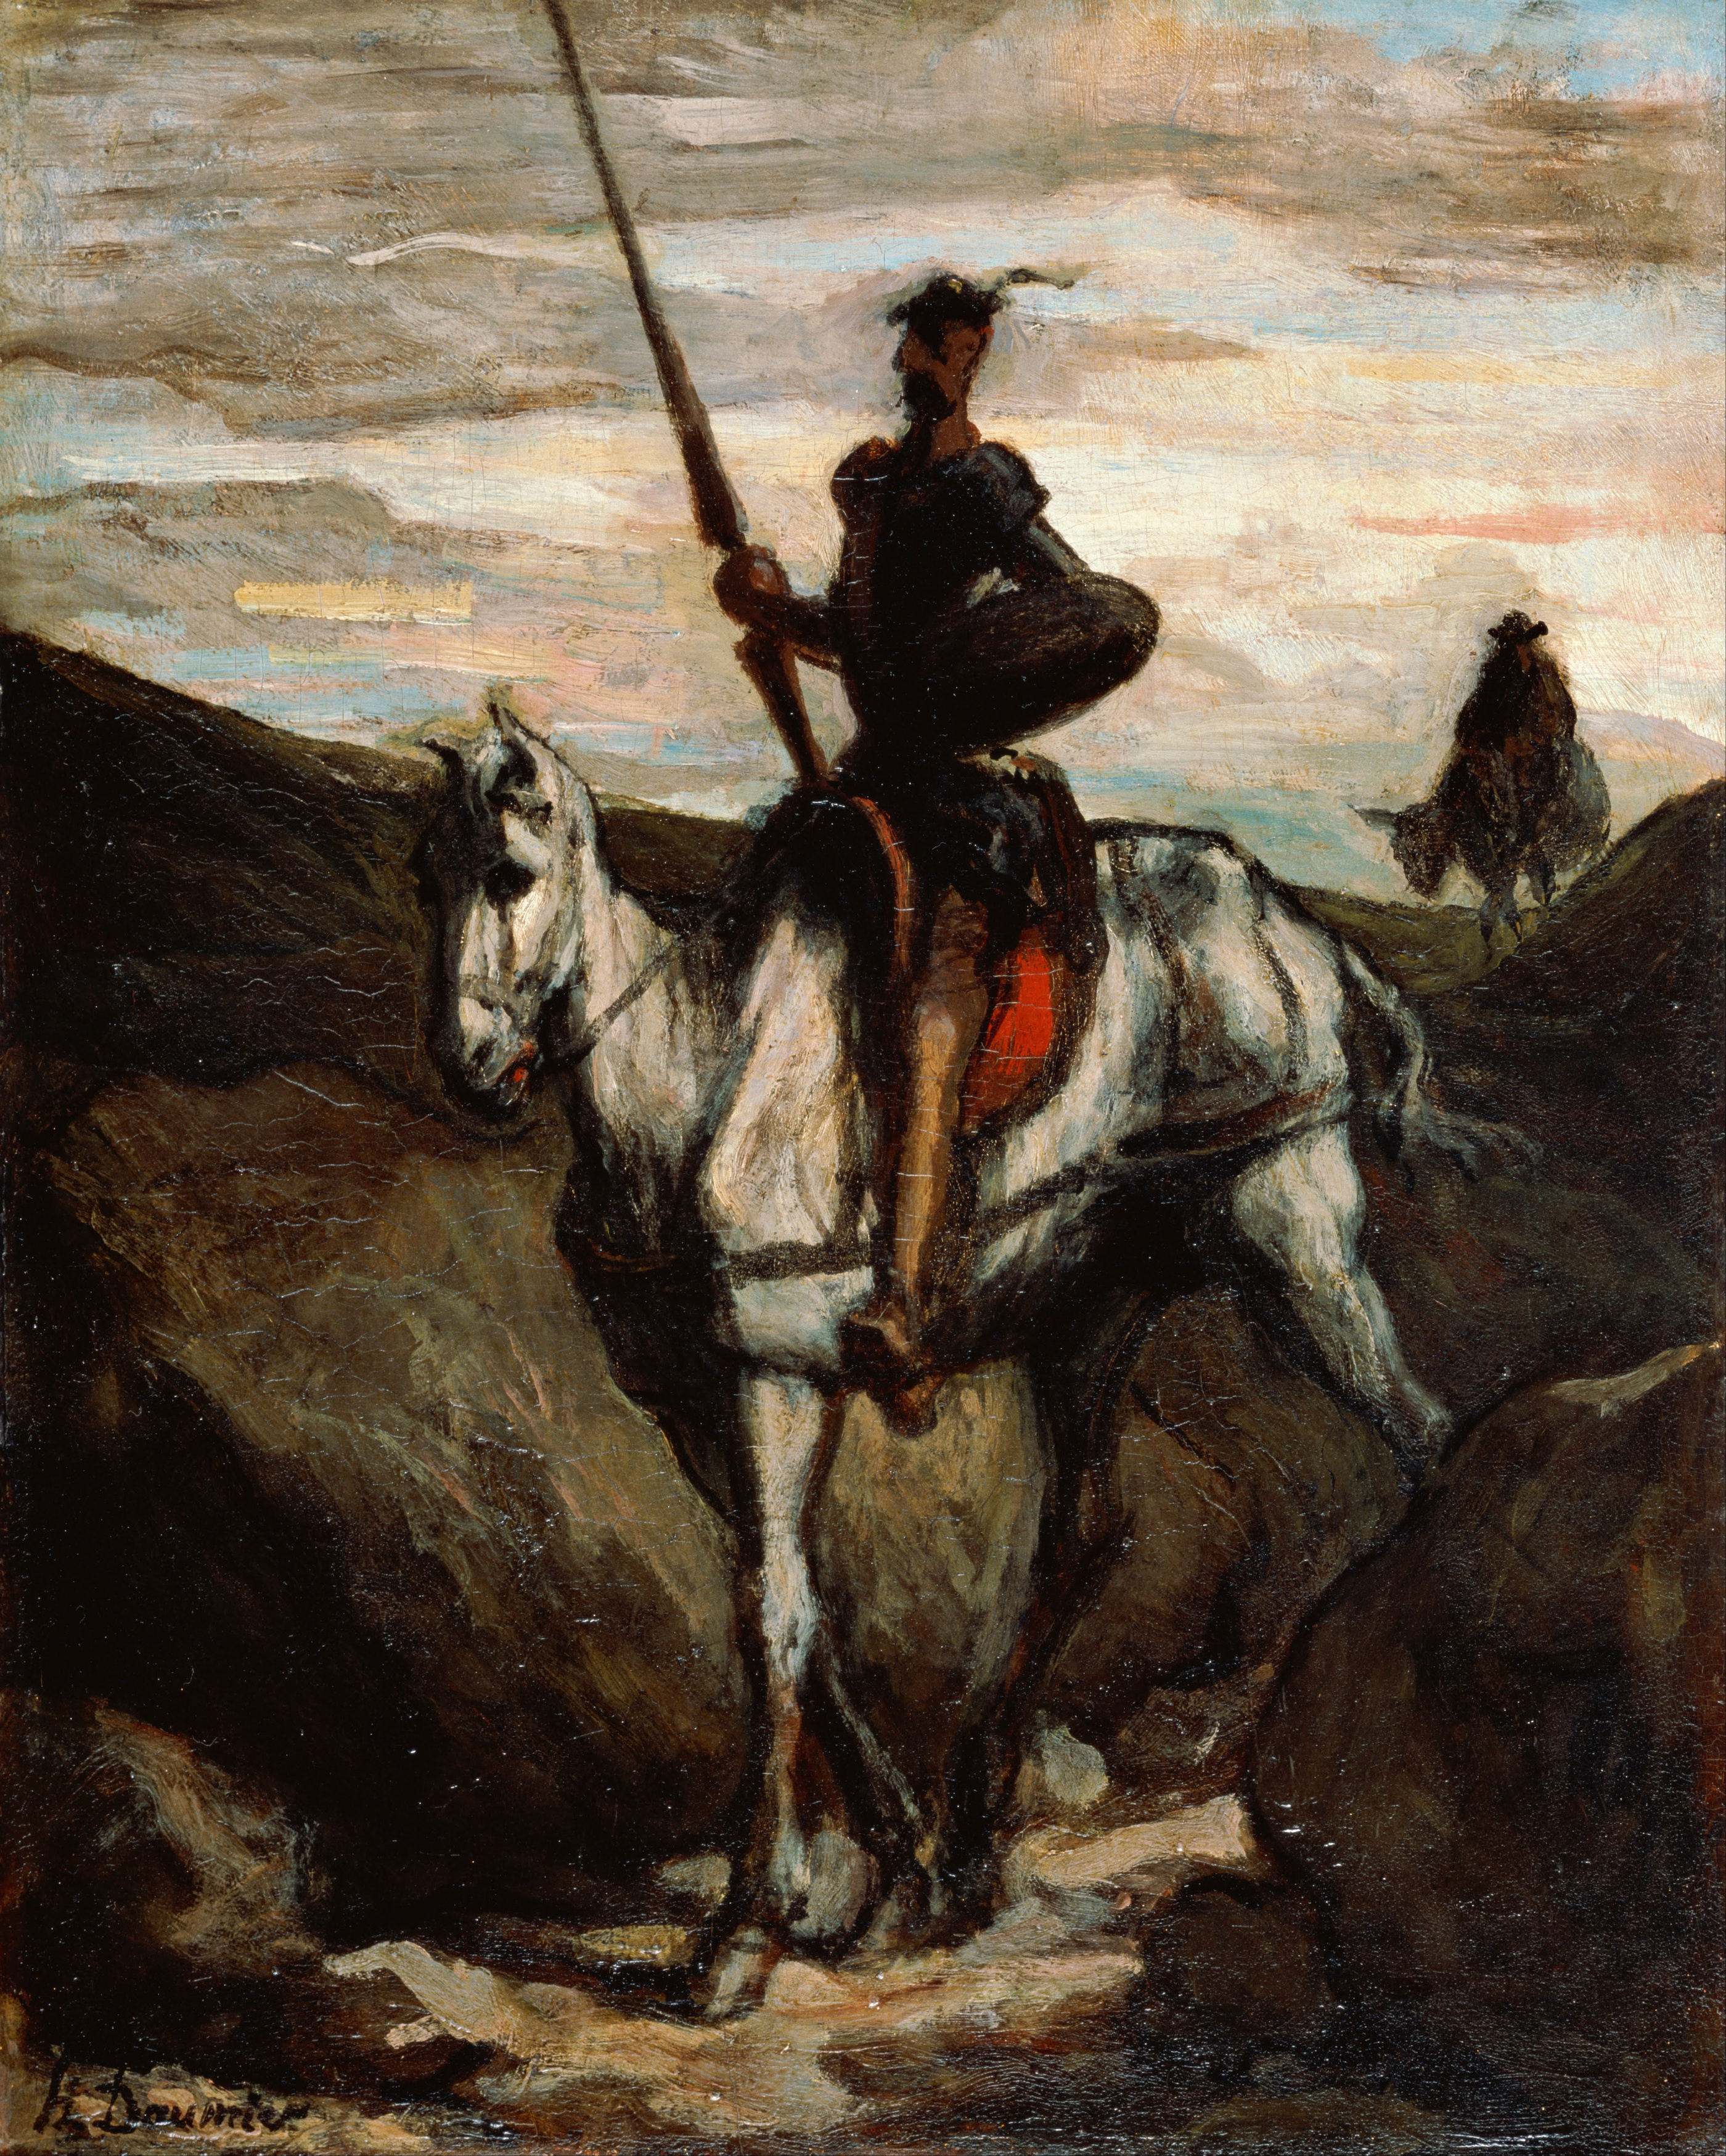 Don Quijote en las montañas by Honore Daumier - c. 1850 - 312 x 396 cm Museo de Arte Bridgestone